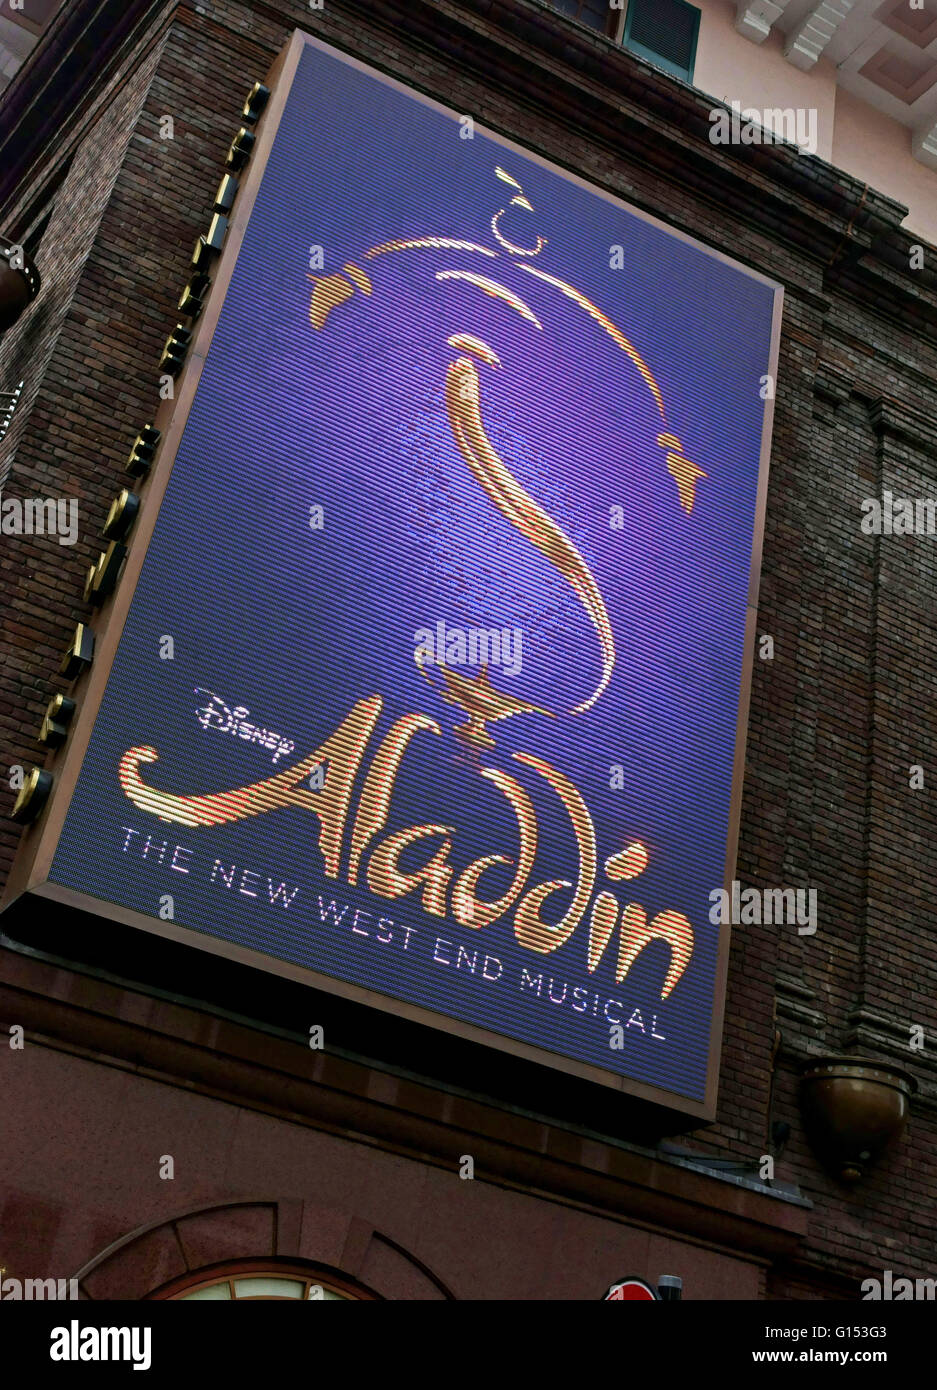 Disney's 'Aladdin' musical al Prince Edward Theatre nel West End di Londra Foto Stock